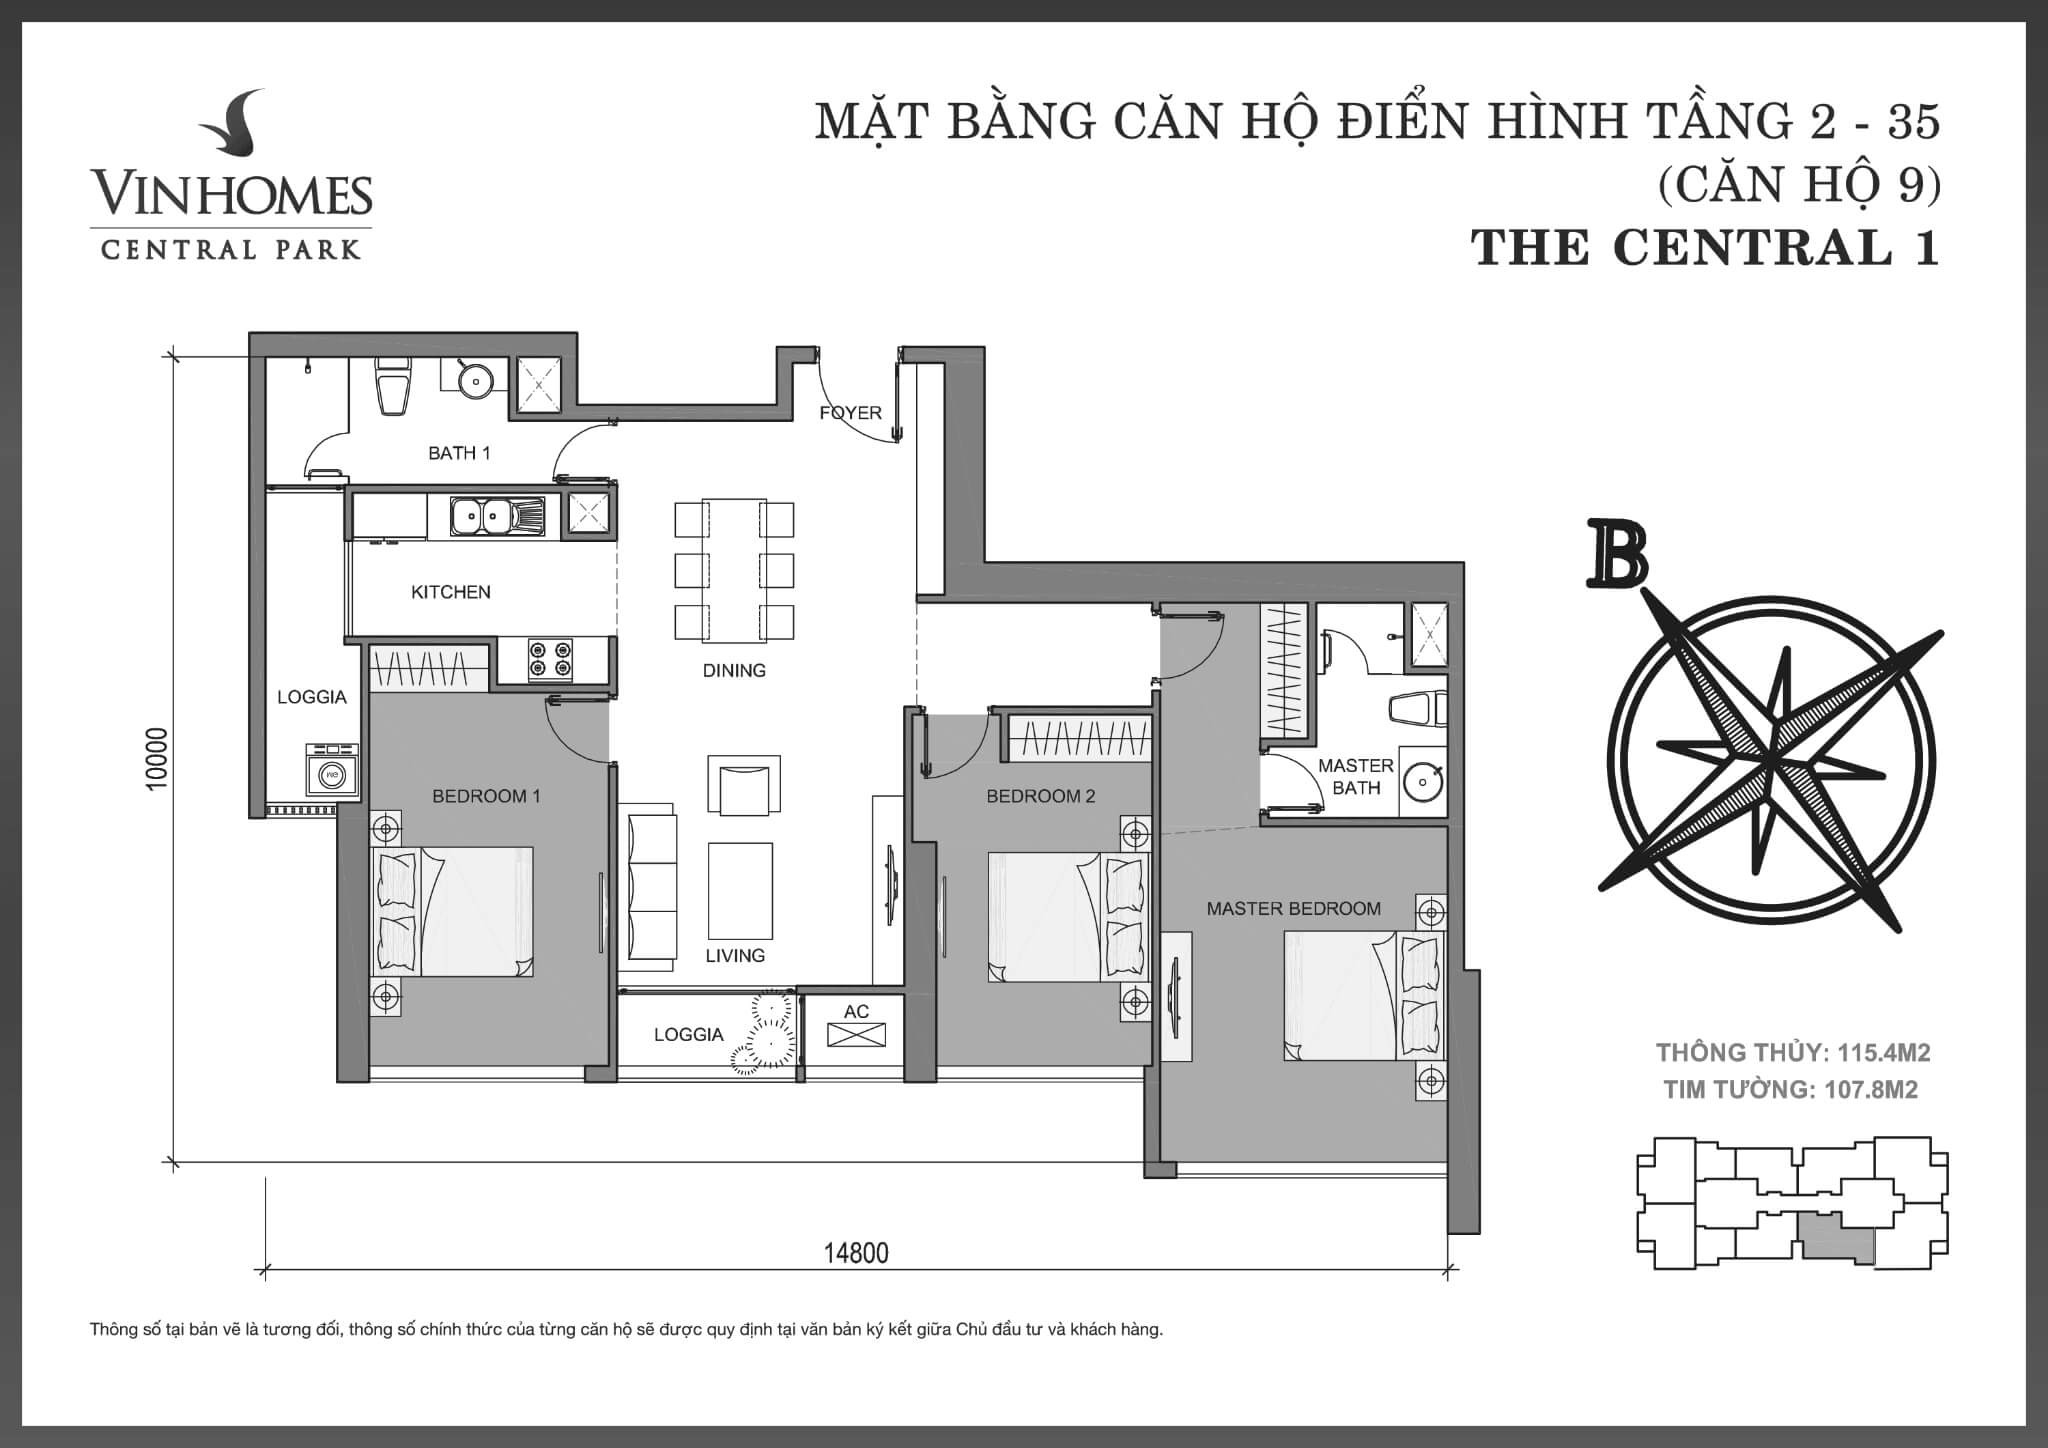 layout căn hộ số 9 tầng 2-35 Central 1